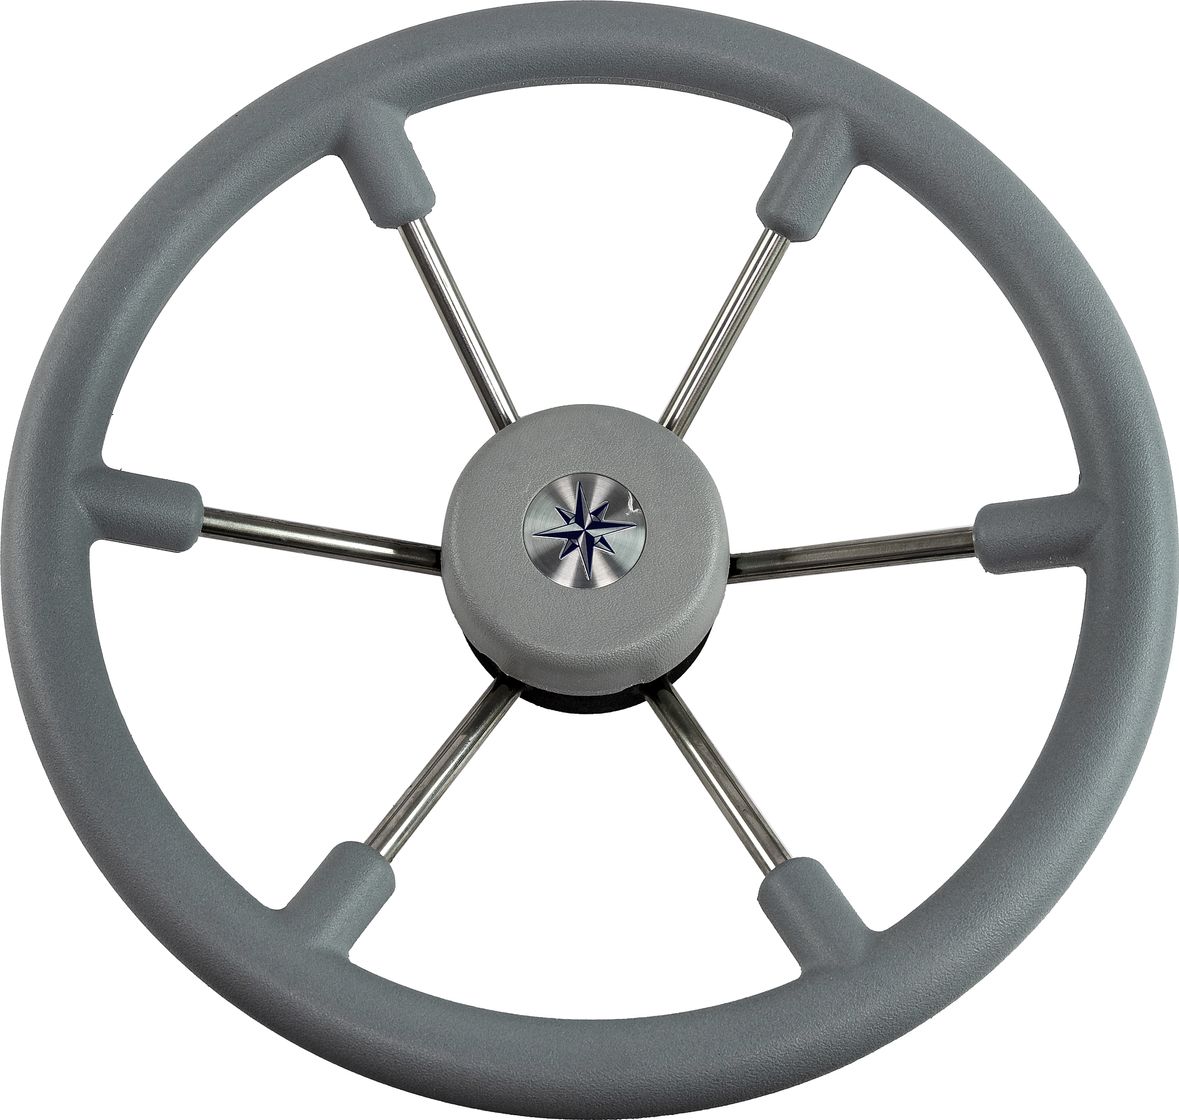 Рулевое колесо LEADER TANEGUM серый обод серебряные спицы д. 360 мм VN7360-03 рулевое колесо leader wood деревянный обод серебряные спицы д 360 мм vn7360 33